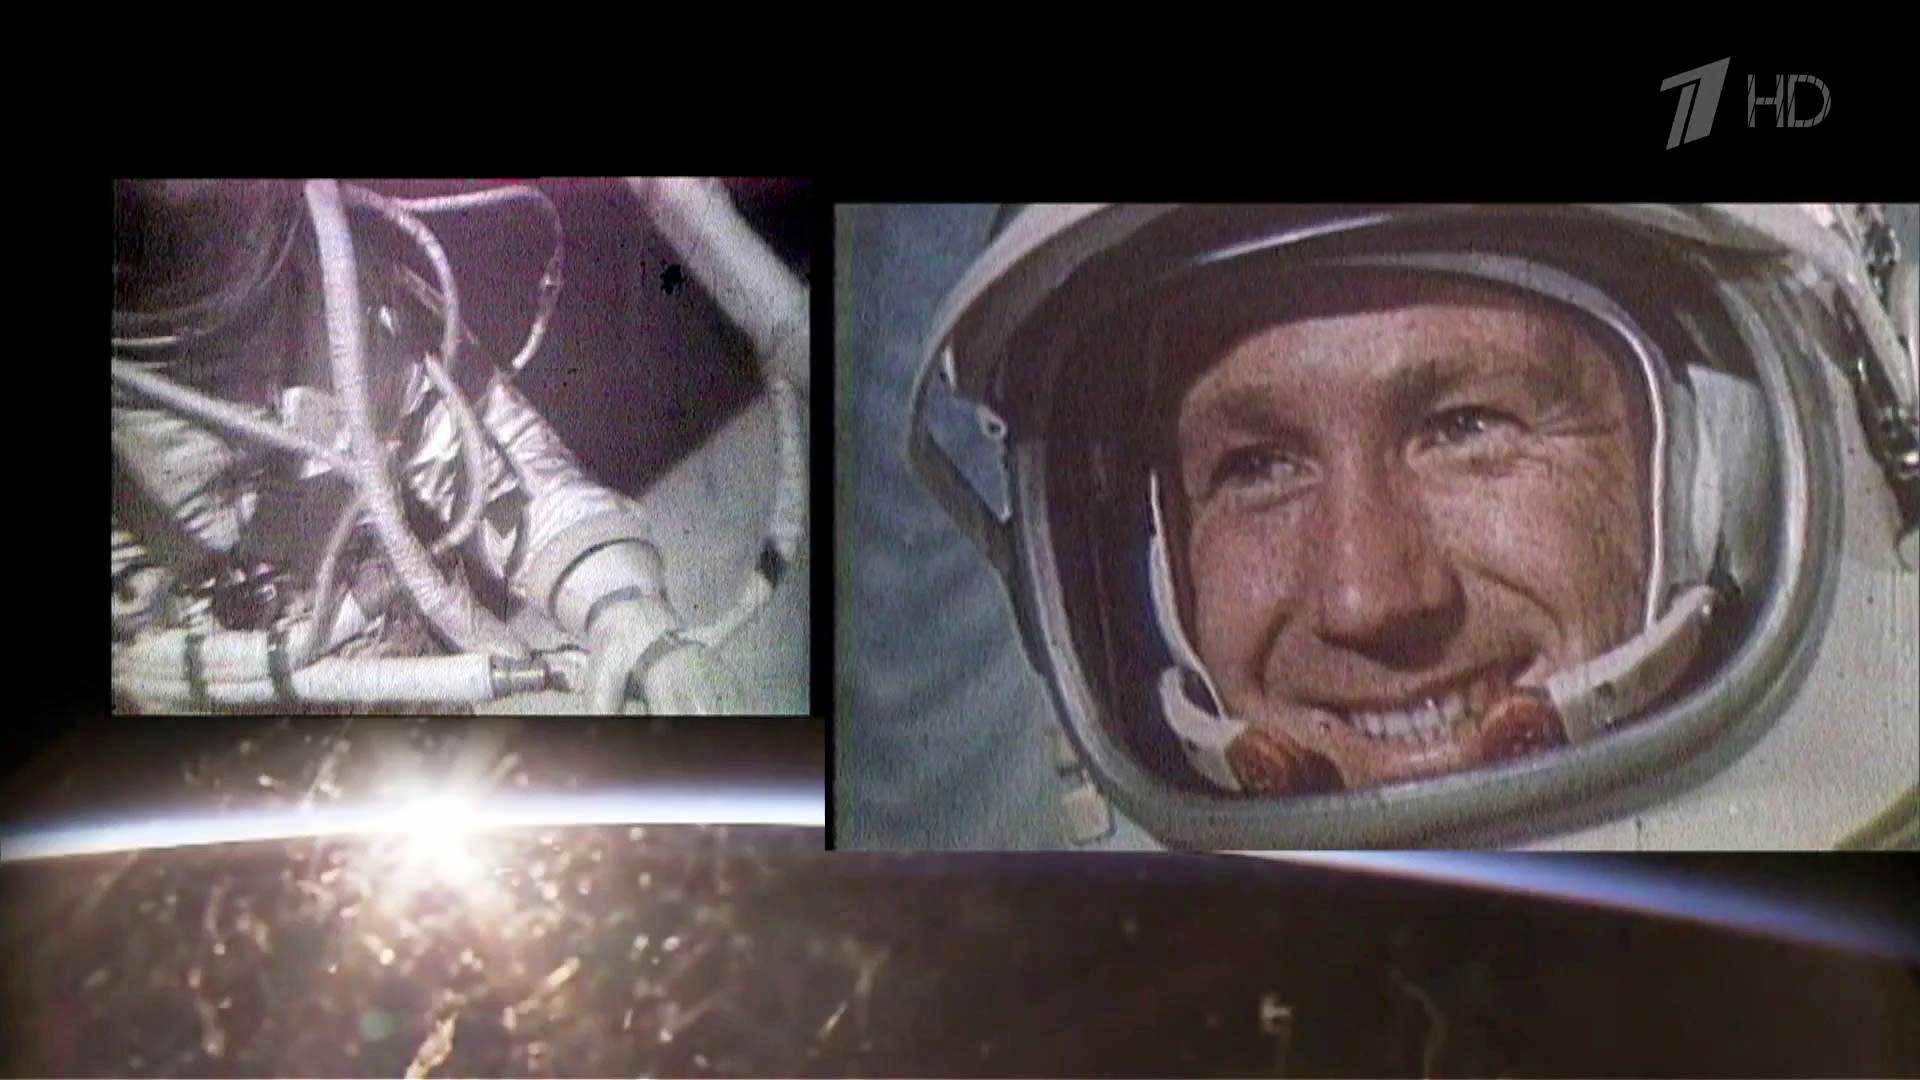 Леонов в открытом космосе фото